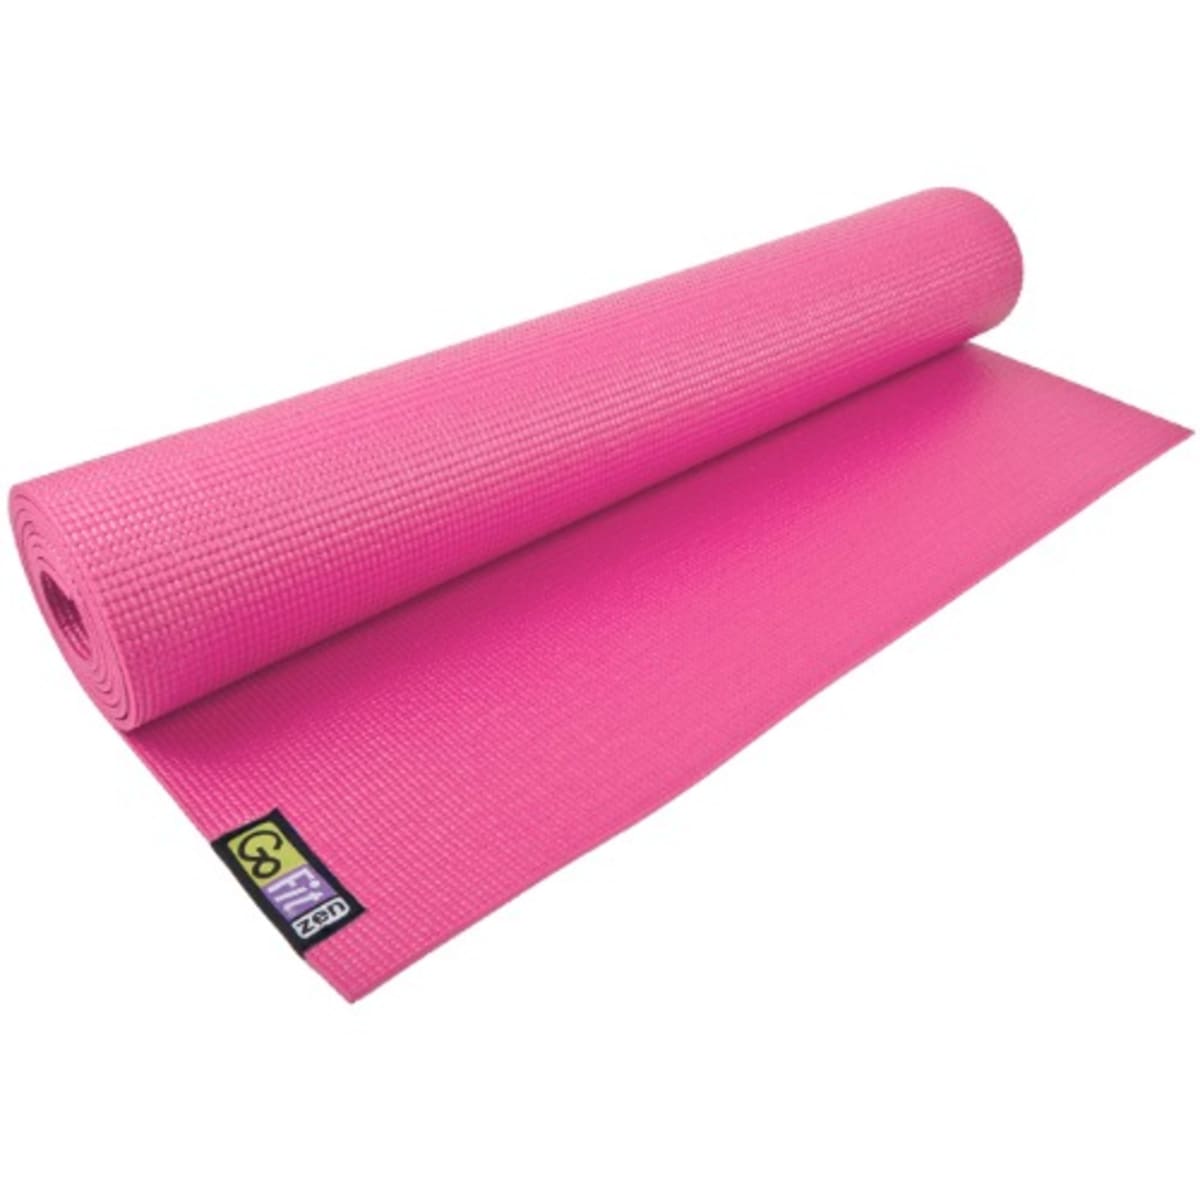 Yoga Mat - Pink  Konga Online Shopping